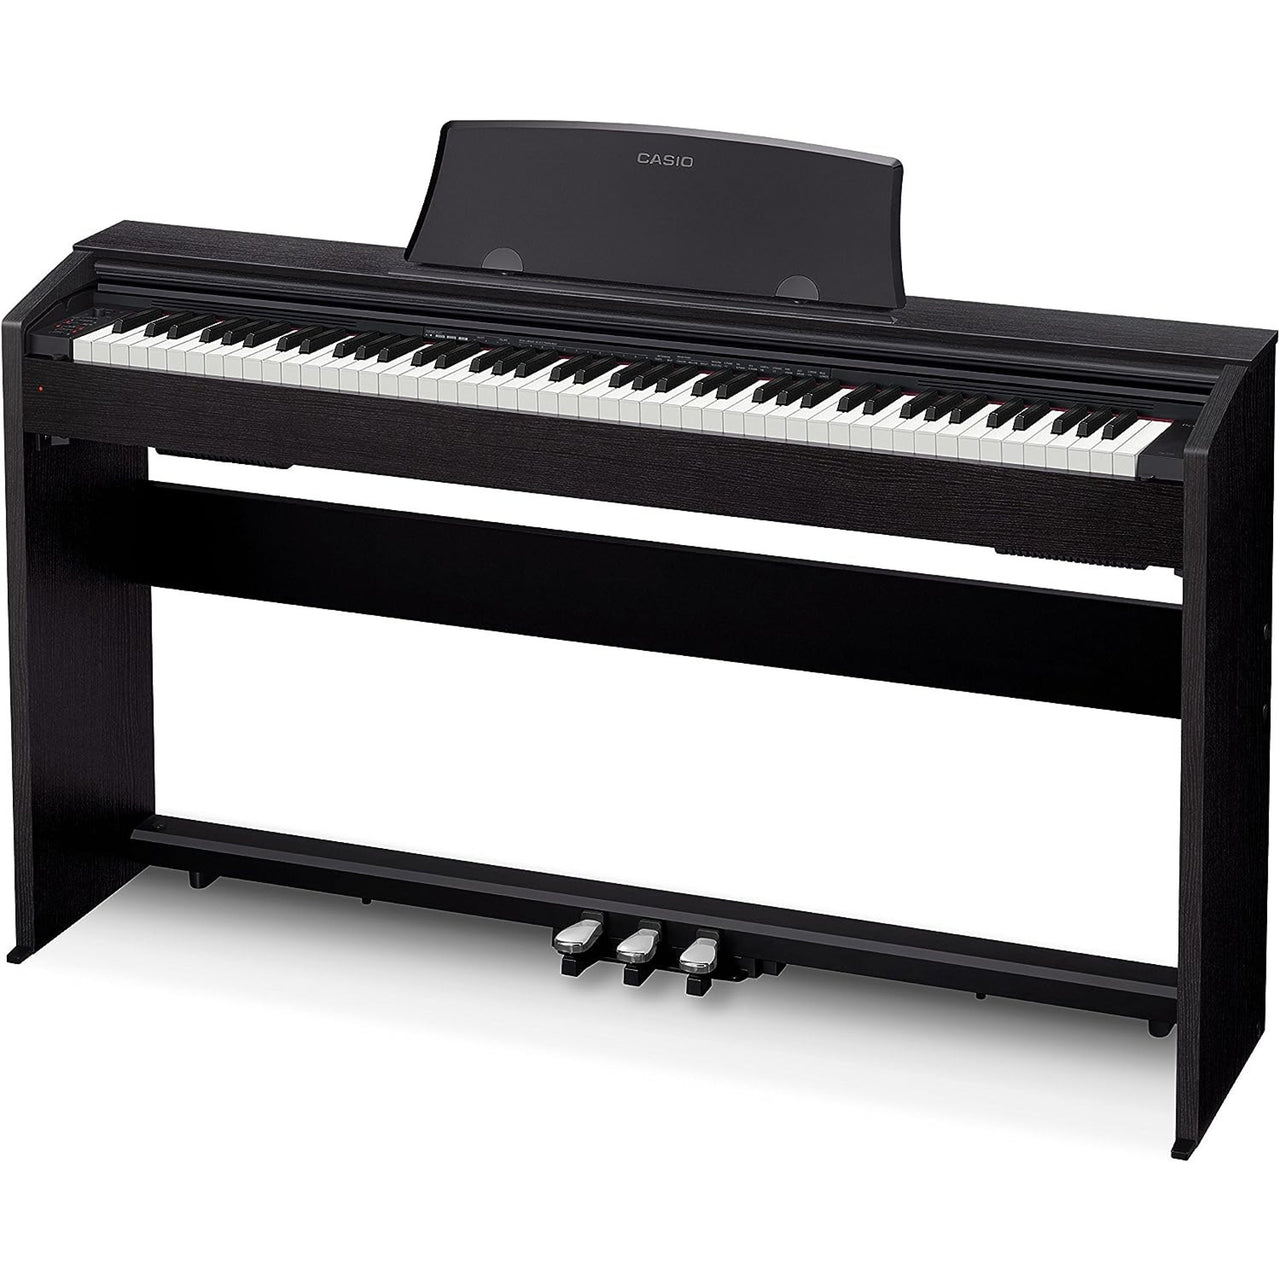 Piano Digital Casio Px-770 Bk Privia 88 Teclas Negro